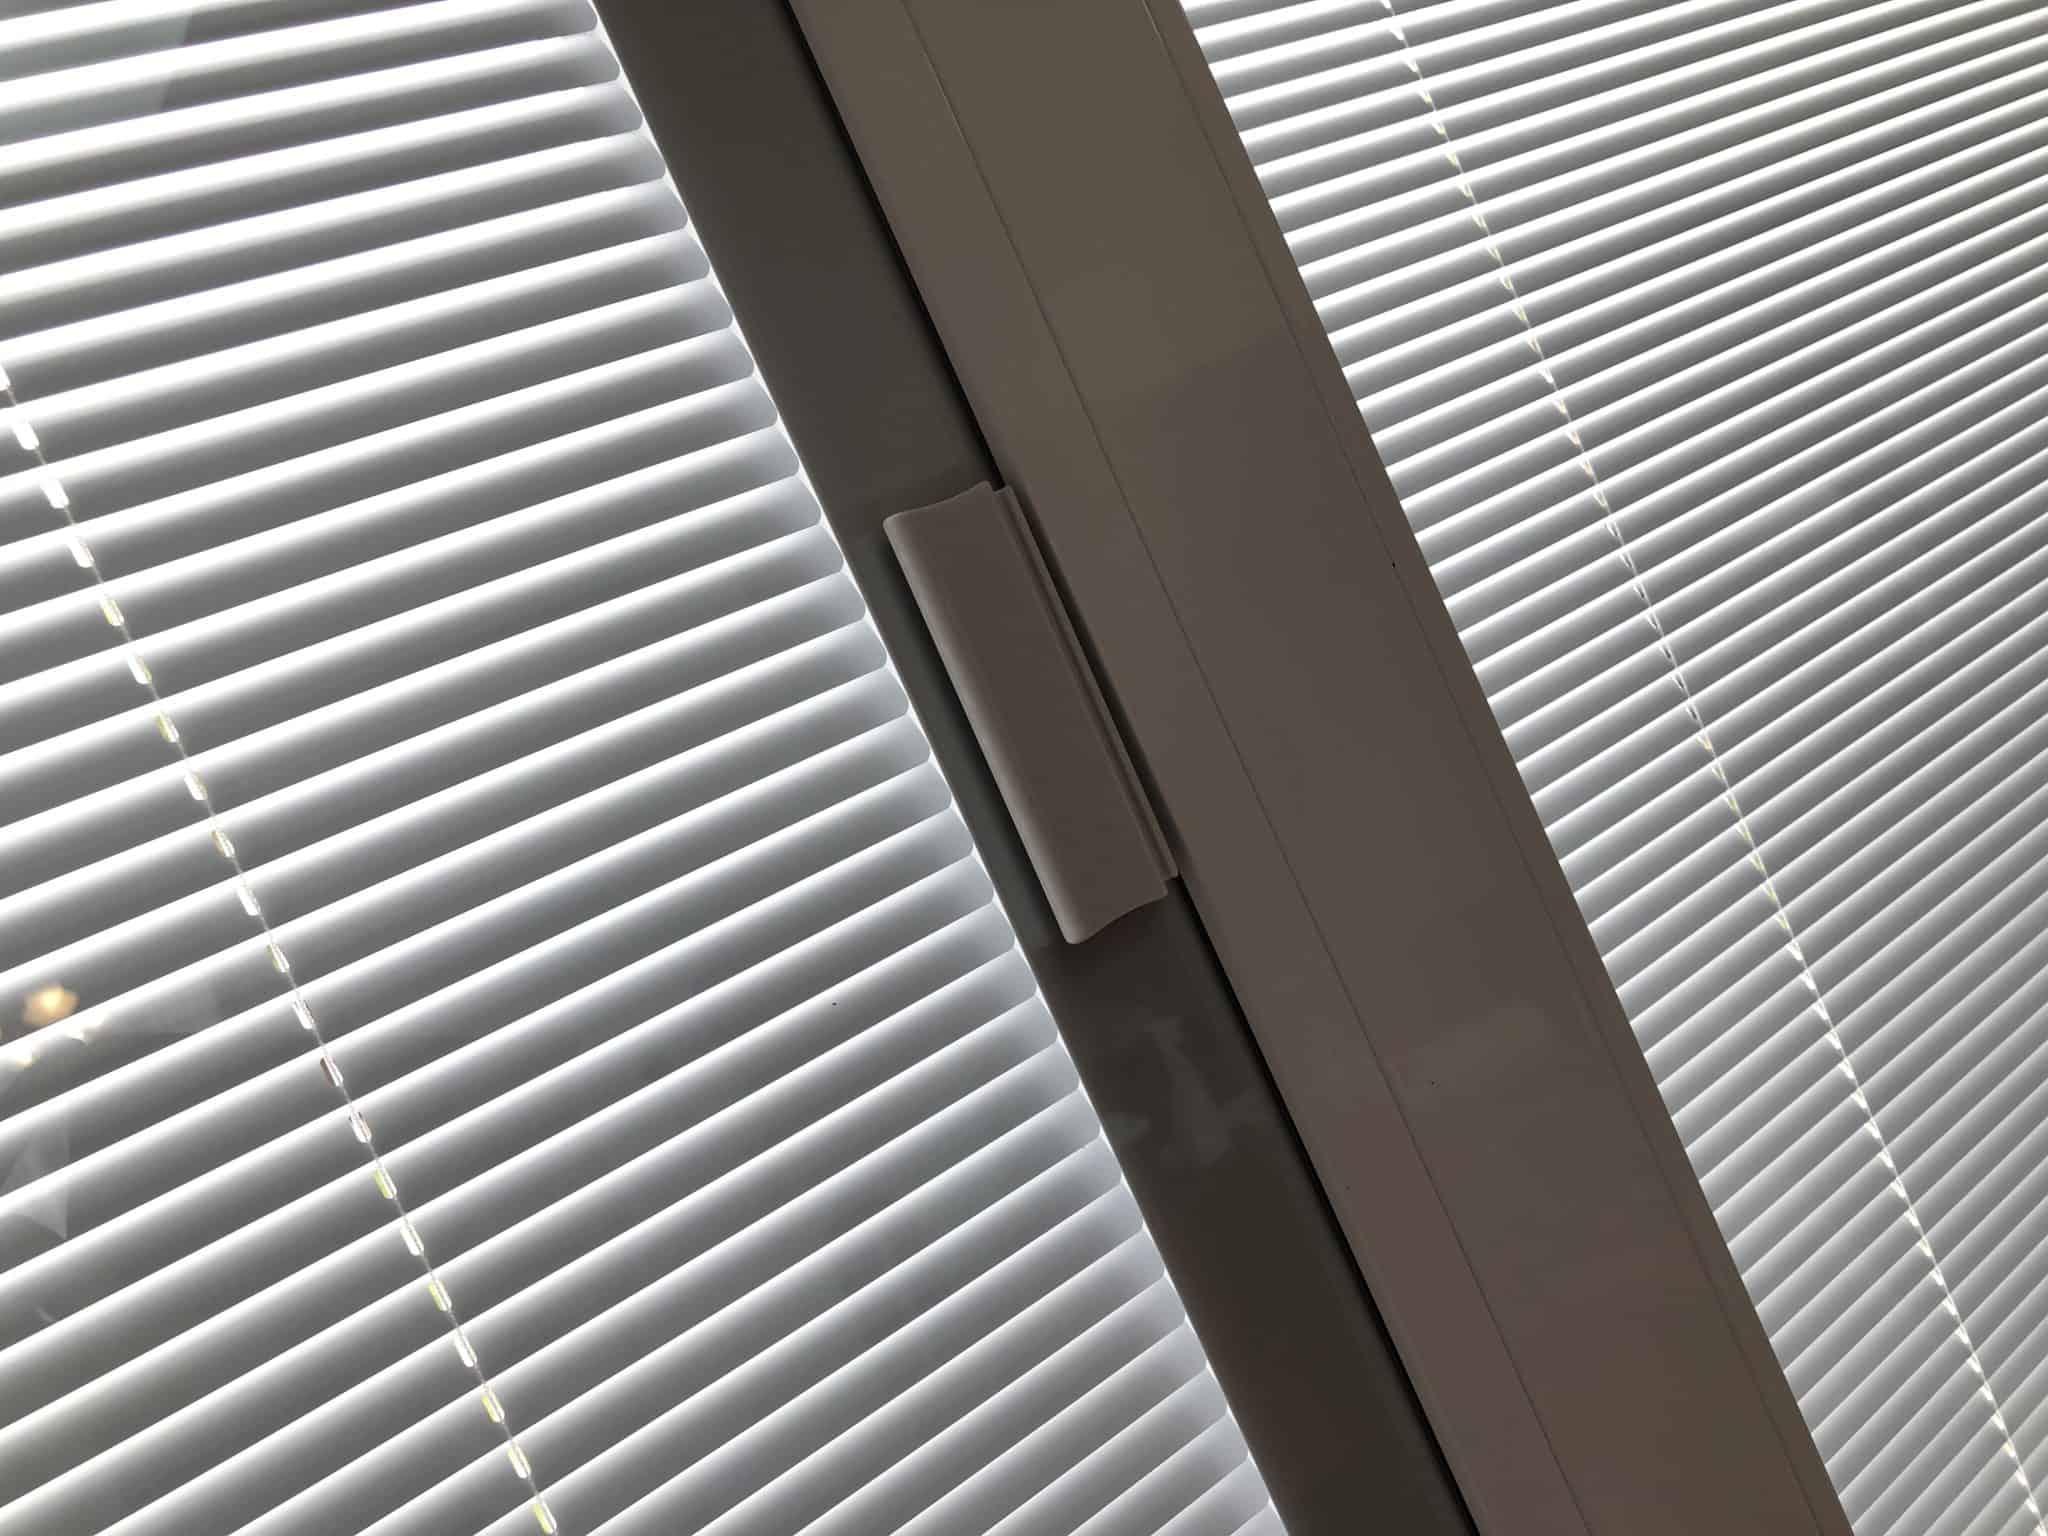 integral-blinds-for-sliding-doors